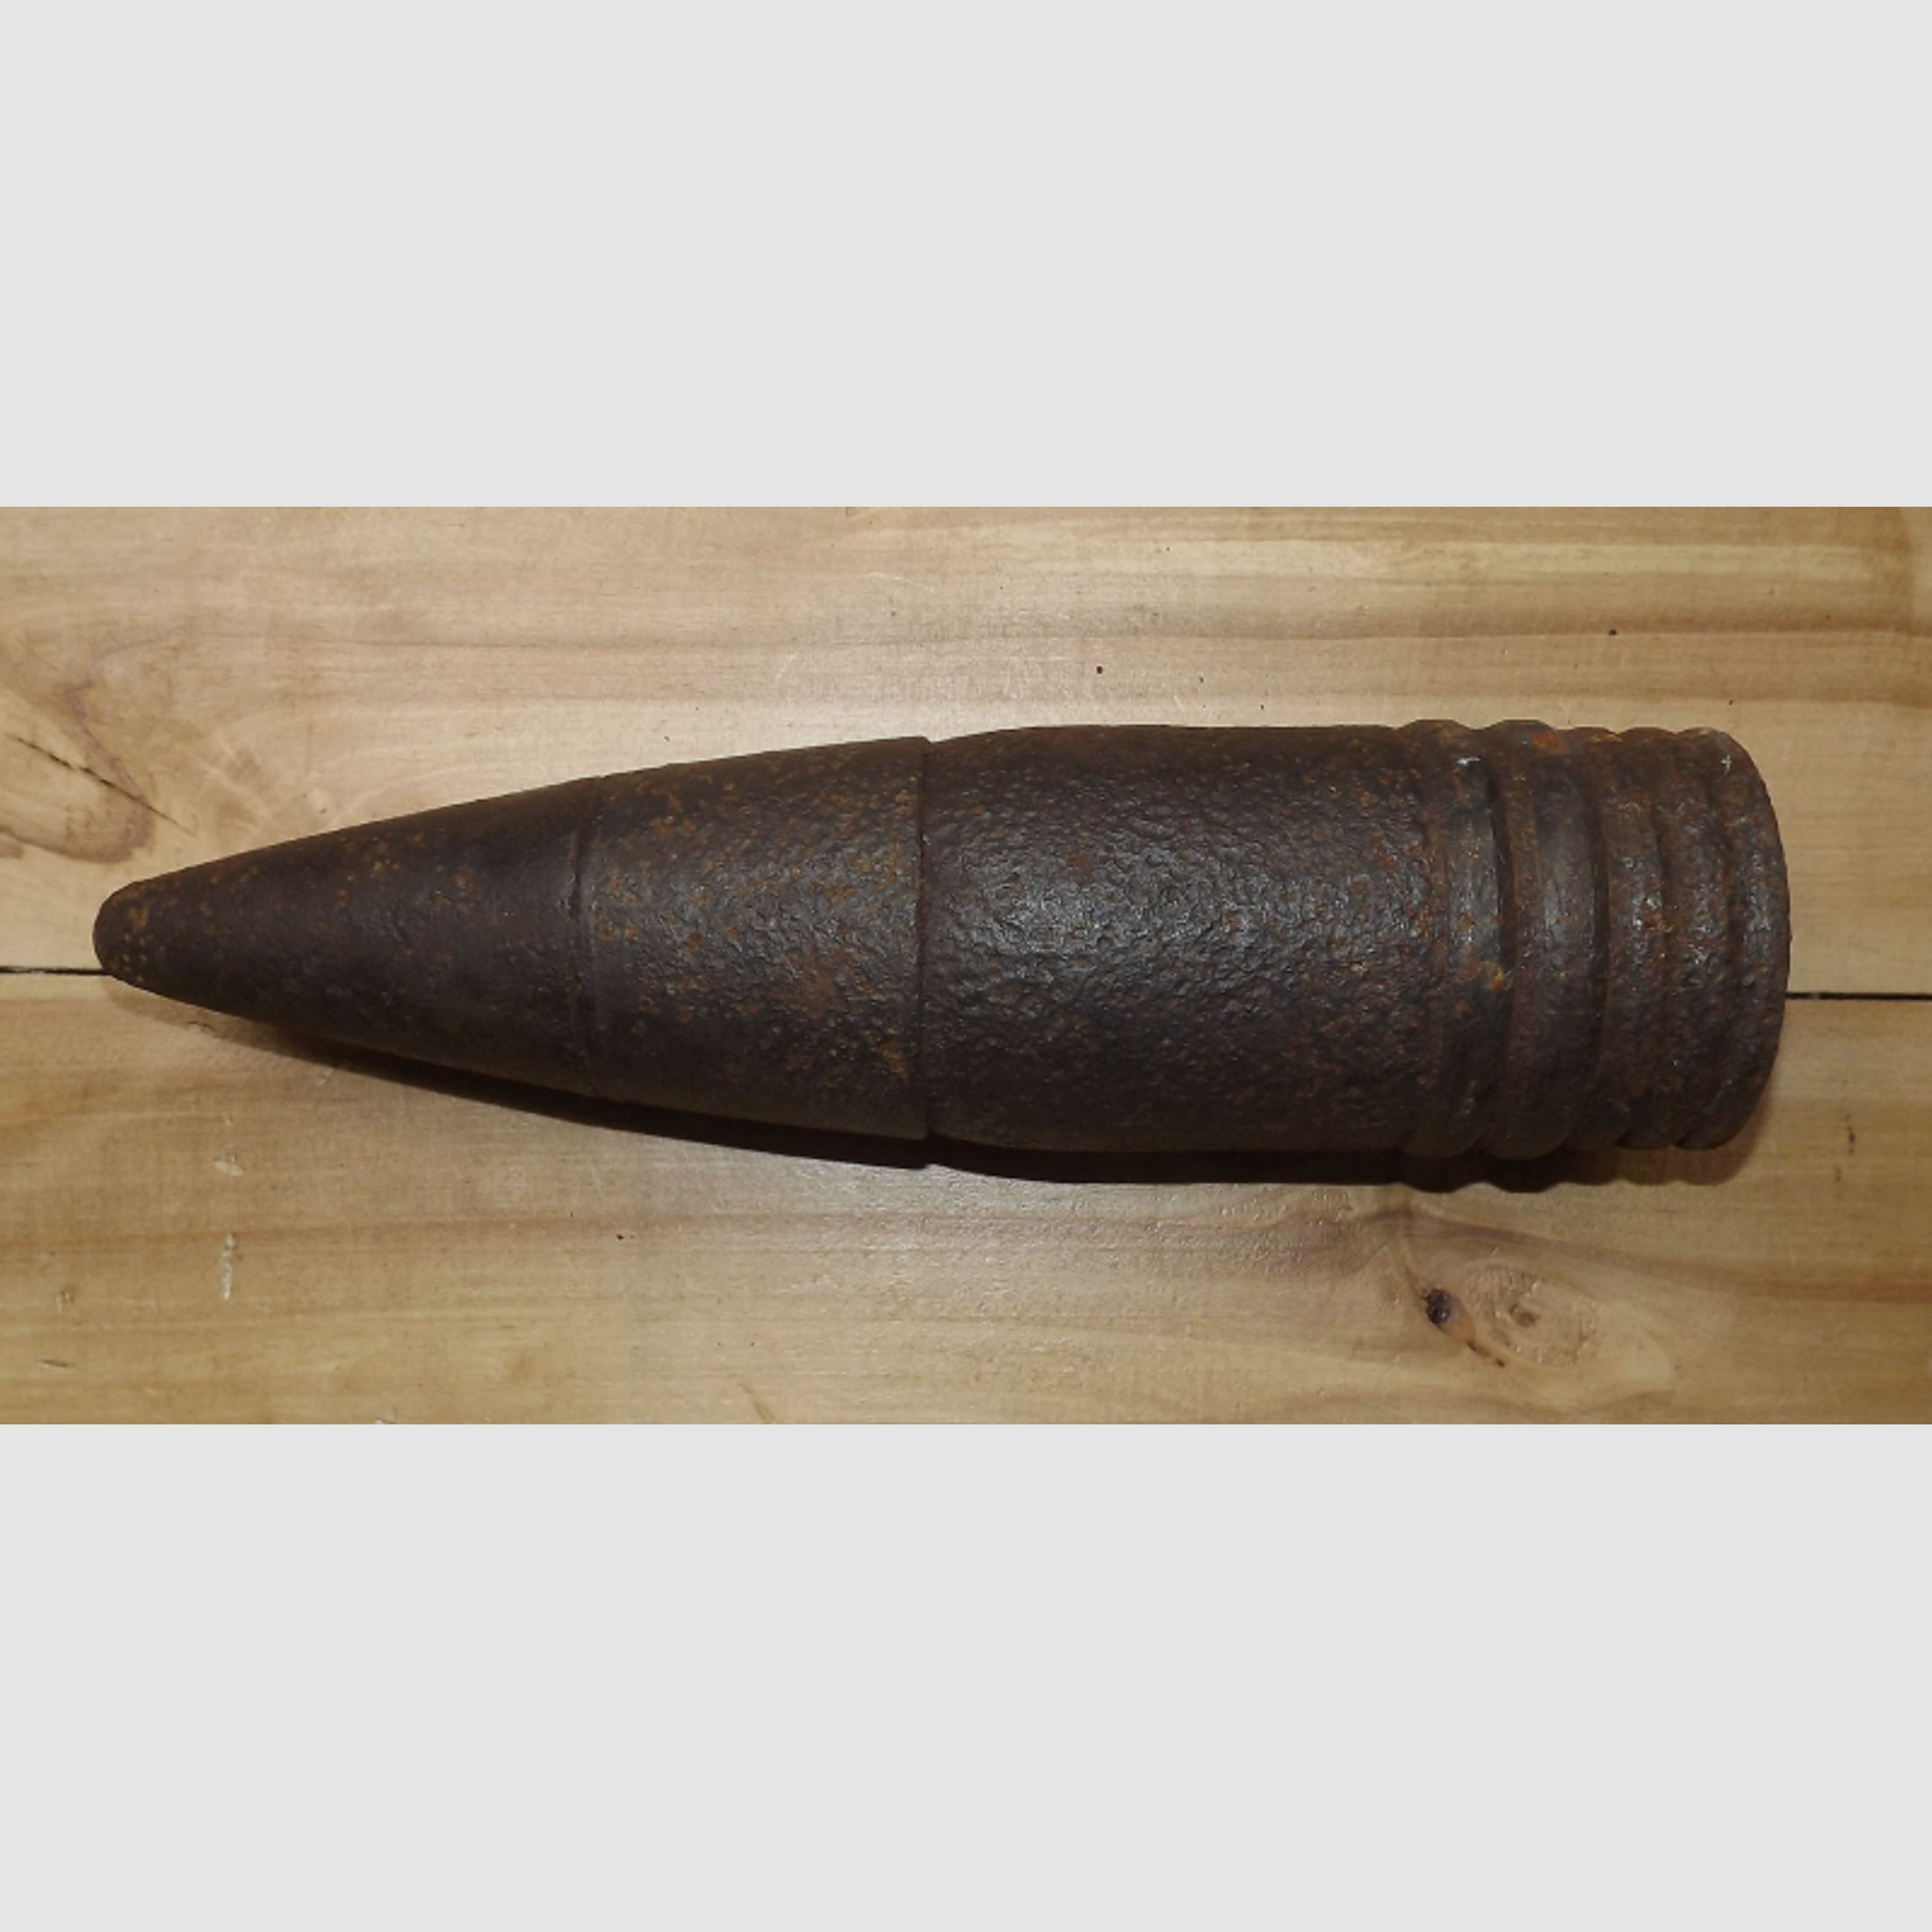 DEKO 8,8cm Pz-GRANATE Flak 38 #1